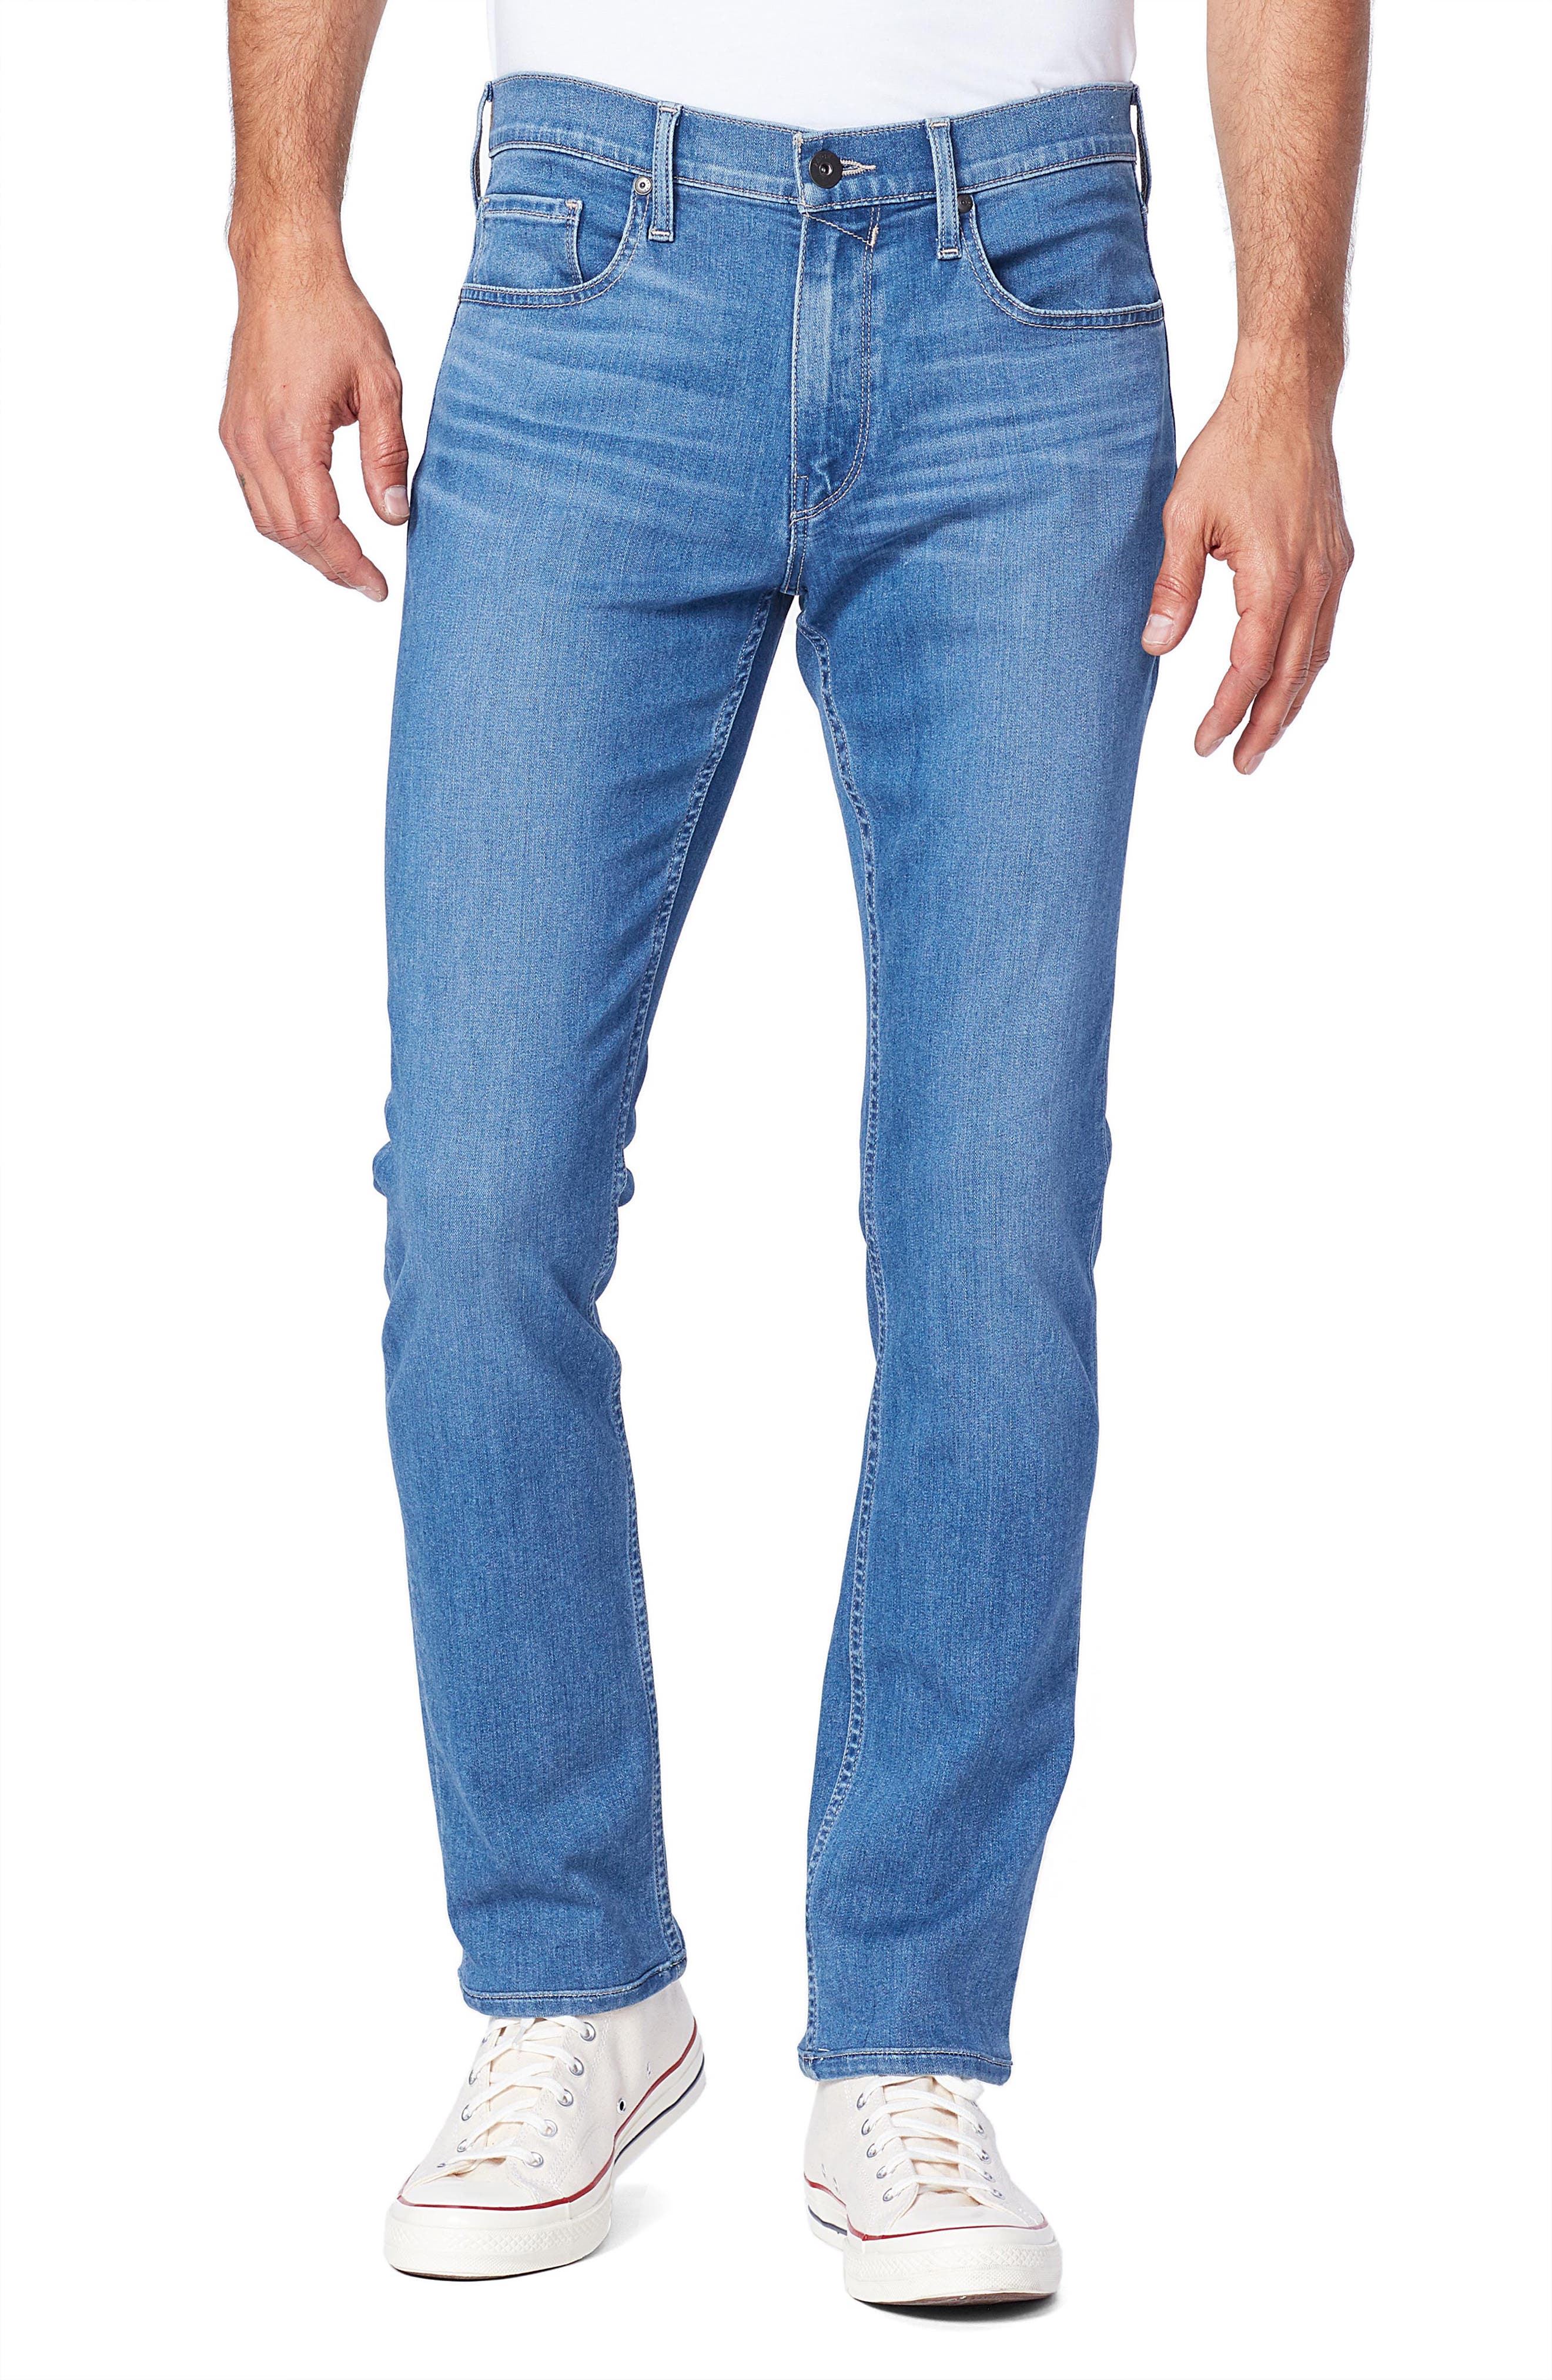 paige jeans fit guide mens